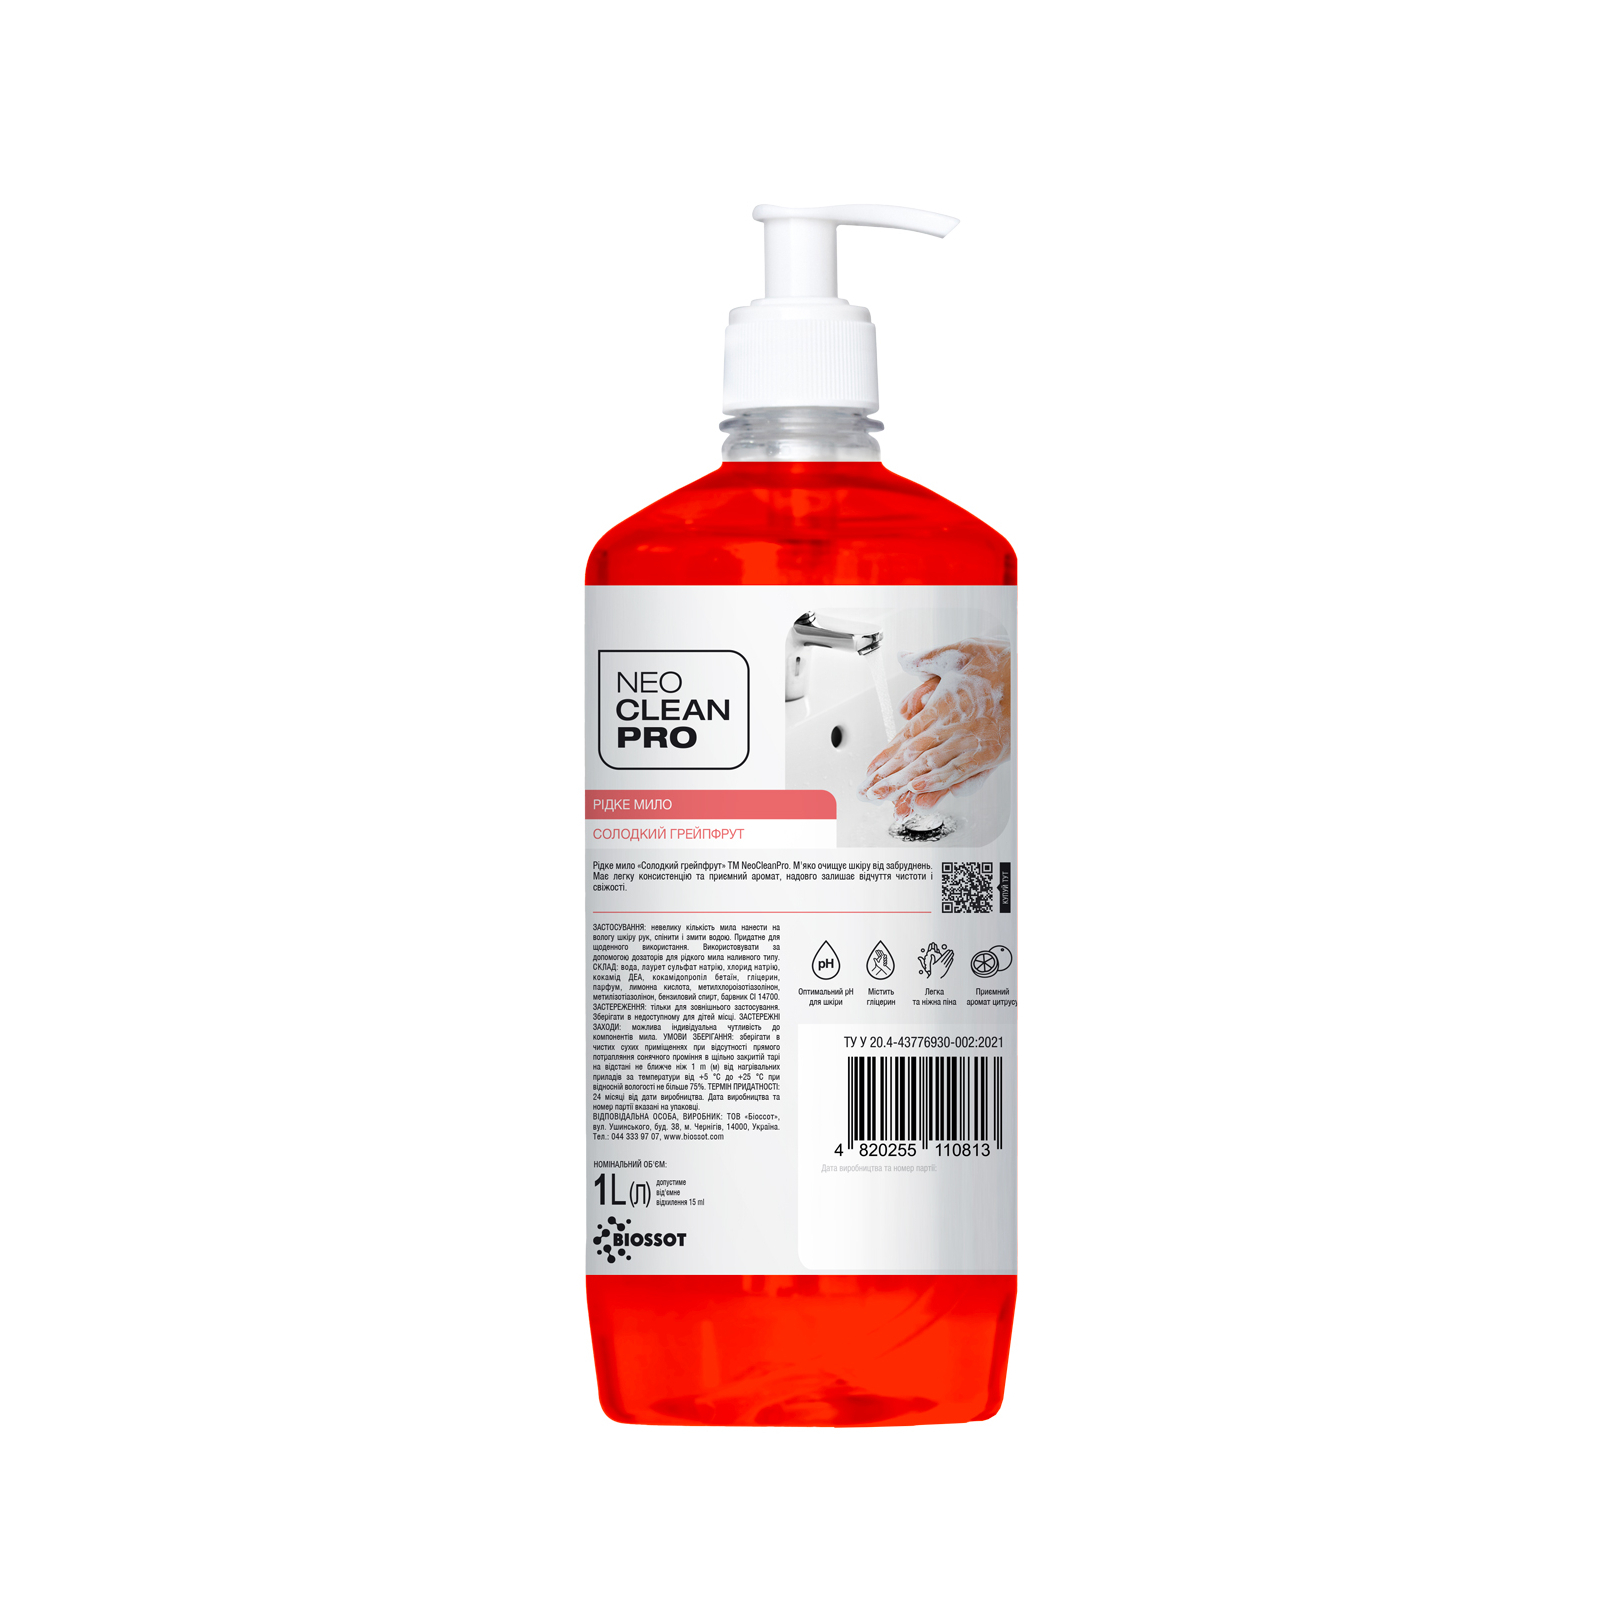 Жидкое мыло Biossot NeoCleanPro Сладкий грейпфрут с дозатором 1 л (4820255110813)